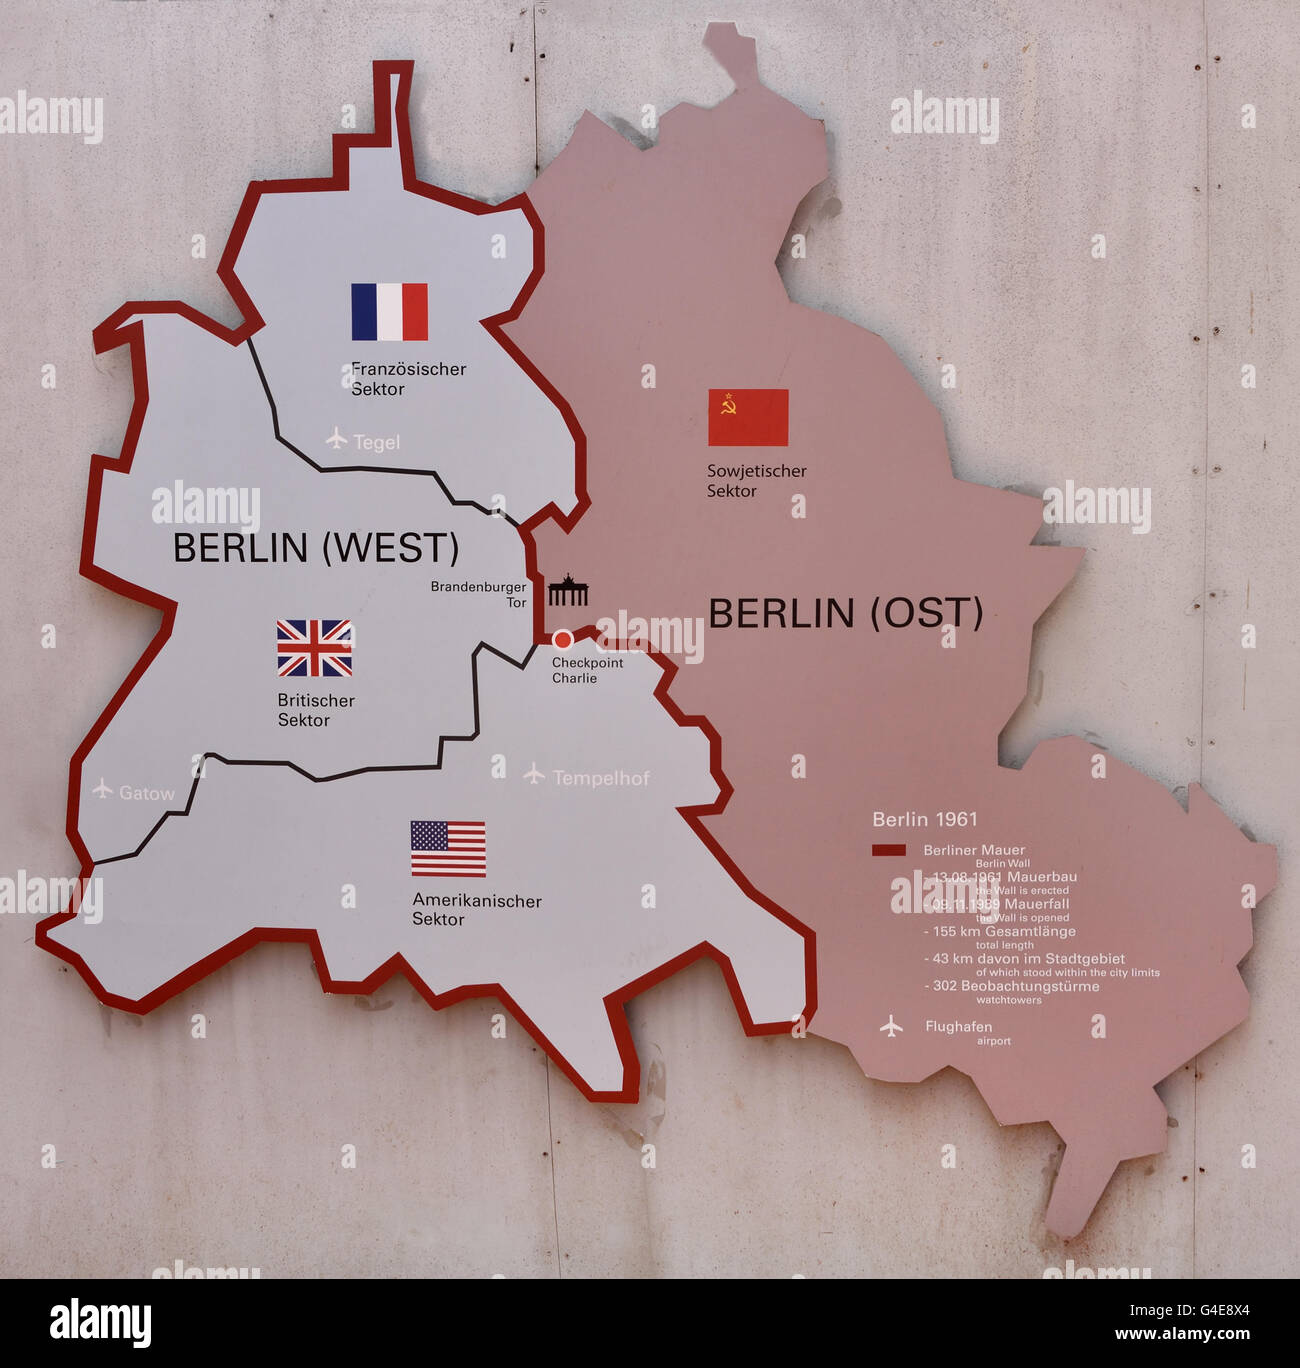 Berlin karte ost west -Fotos und -Bildmaterial in hoher Auflösung – Alamy